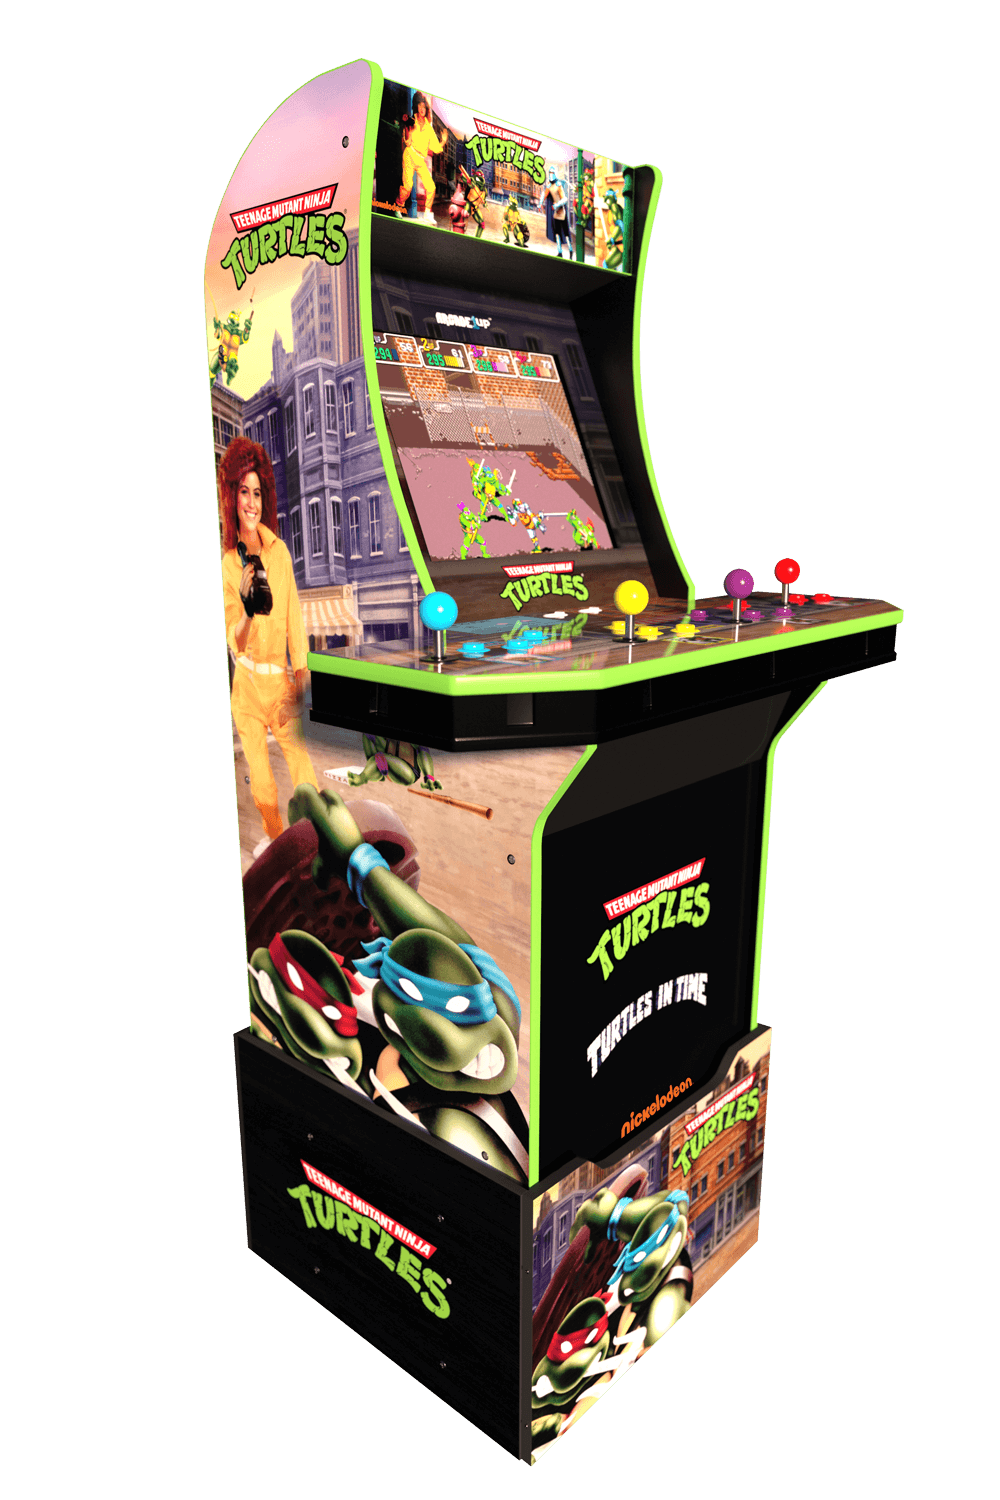 Teenage Mutant Ninja Turtles Arcade Cabinet Arcade1up